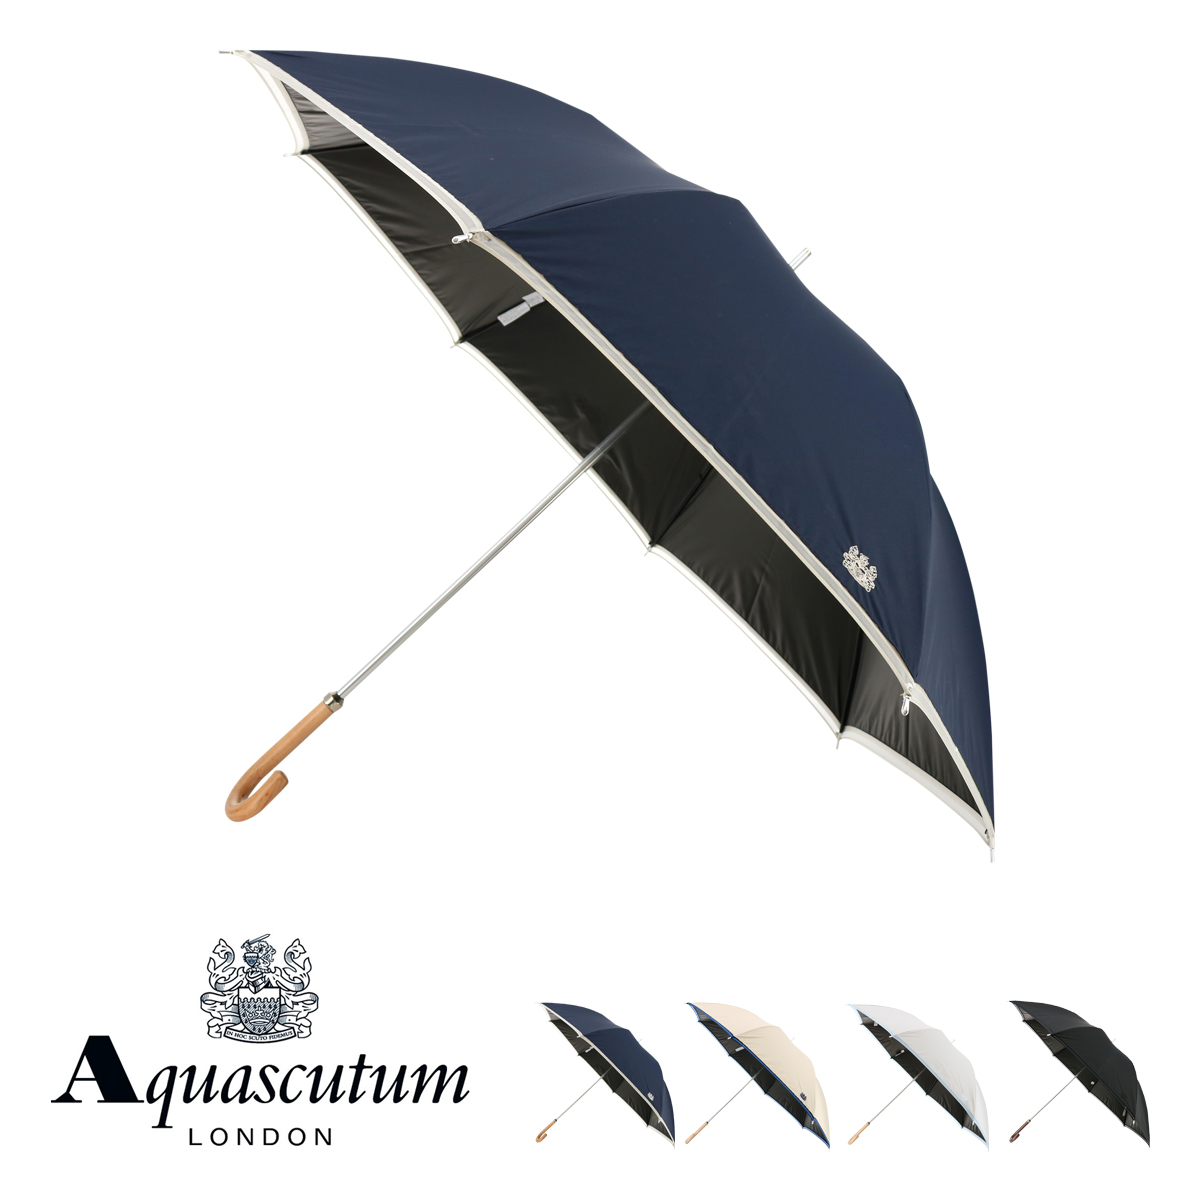 アクアスキュータム 長傘 レディース 1AQ 11062-62 日本製 Aquascutum 晴雨兼用 雨傘 日傘 UVカット 遮光 遮熱 無地